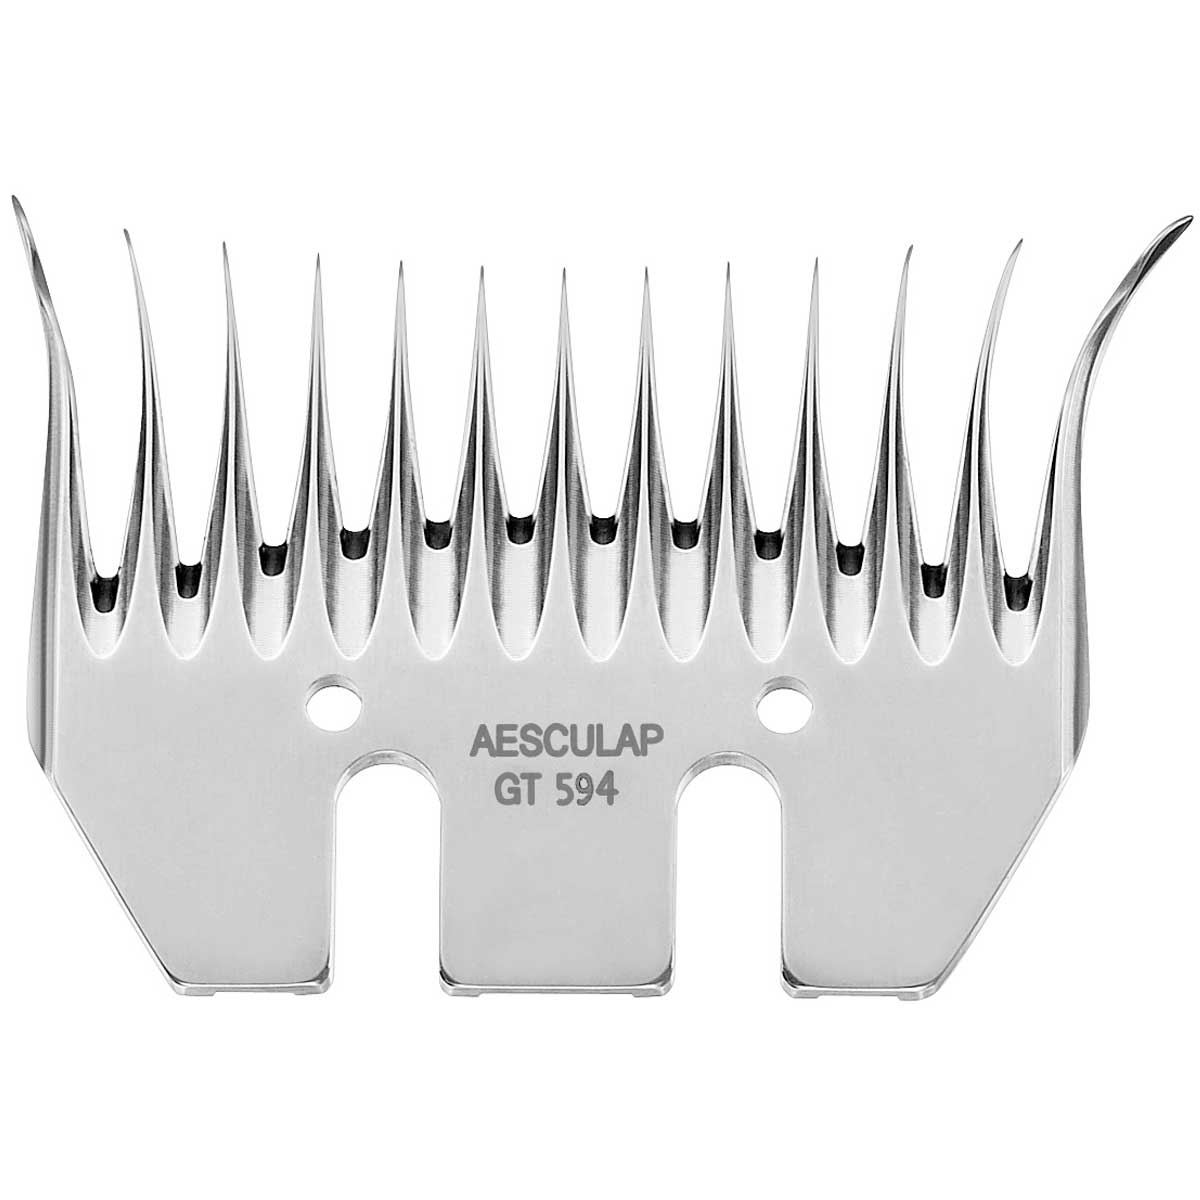 Aesculap Econom Schermesser für Schafe GT594 Untermesser 13 Zähne, 3,5 mm